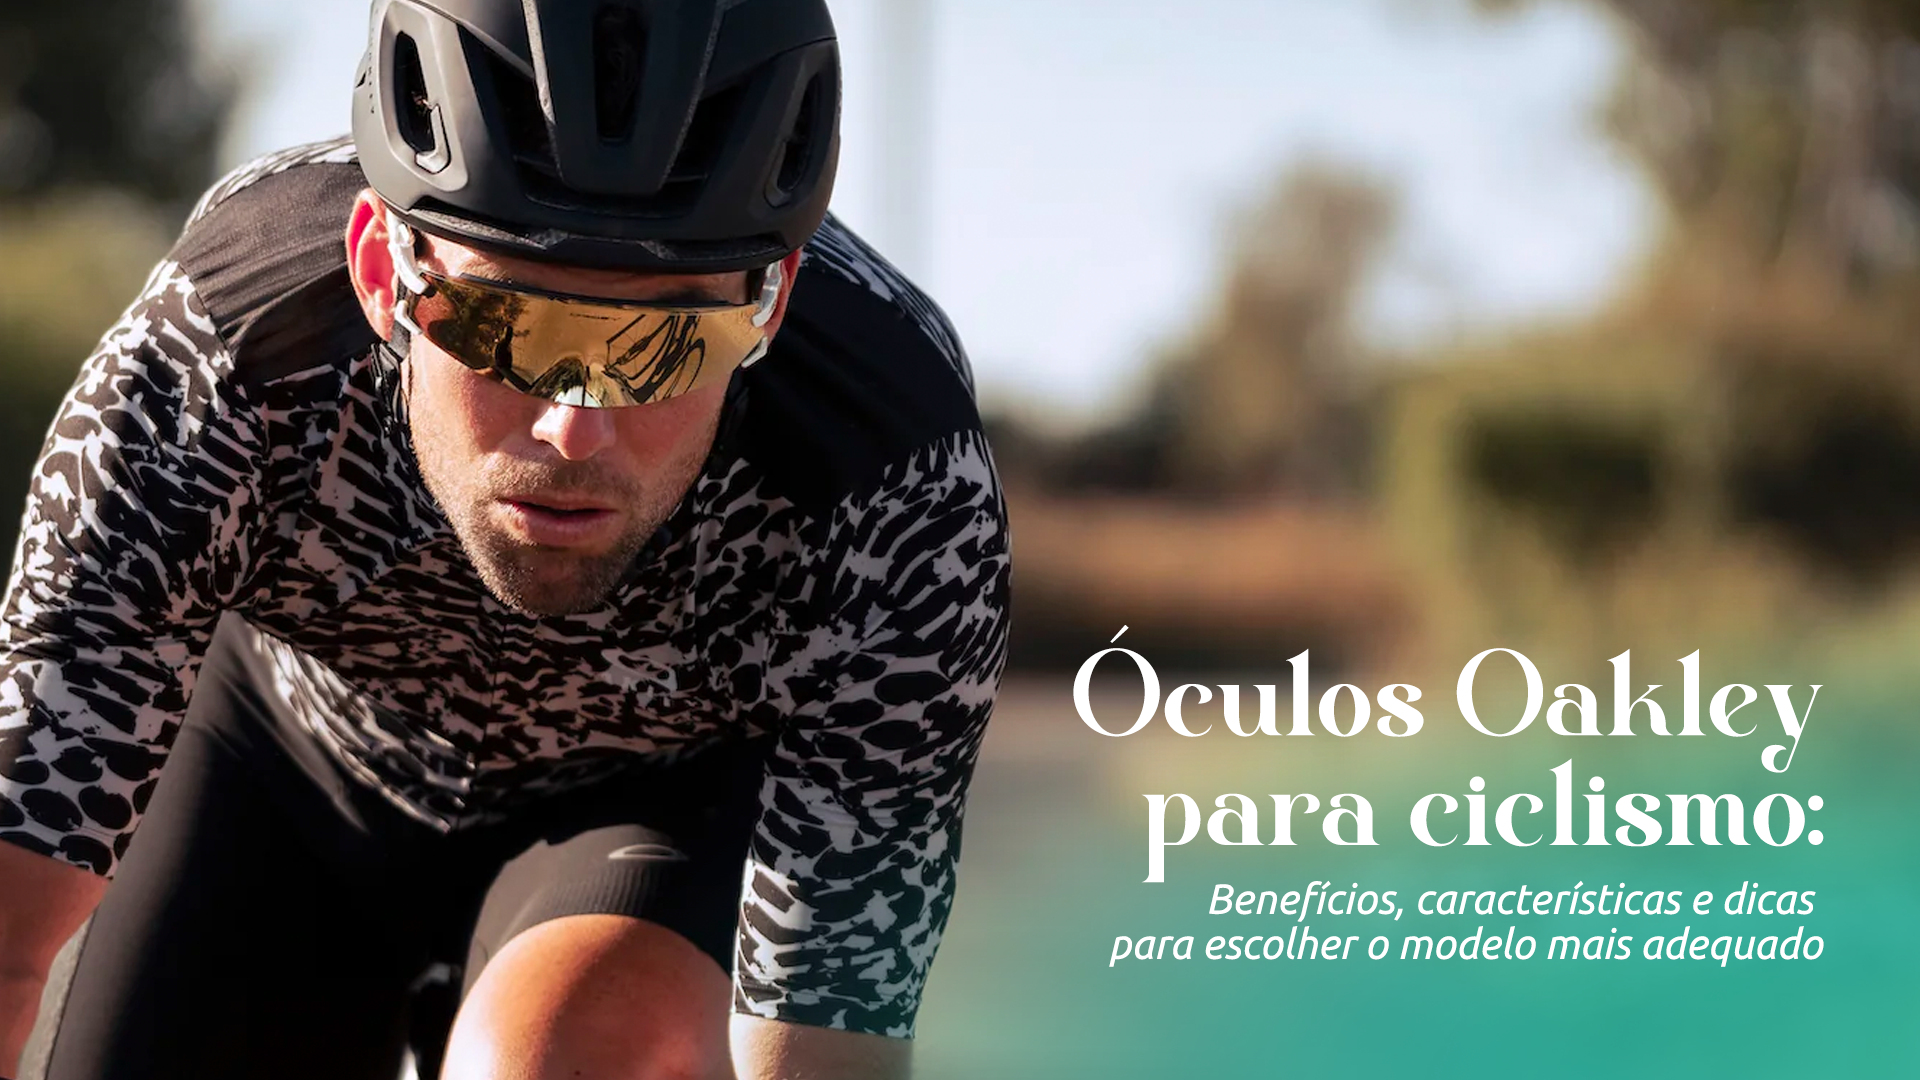 Óculos oakley para ciclismo: Benefícios, características e dicas para escolher o modelo mais adequado